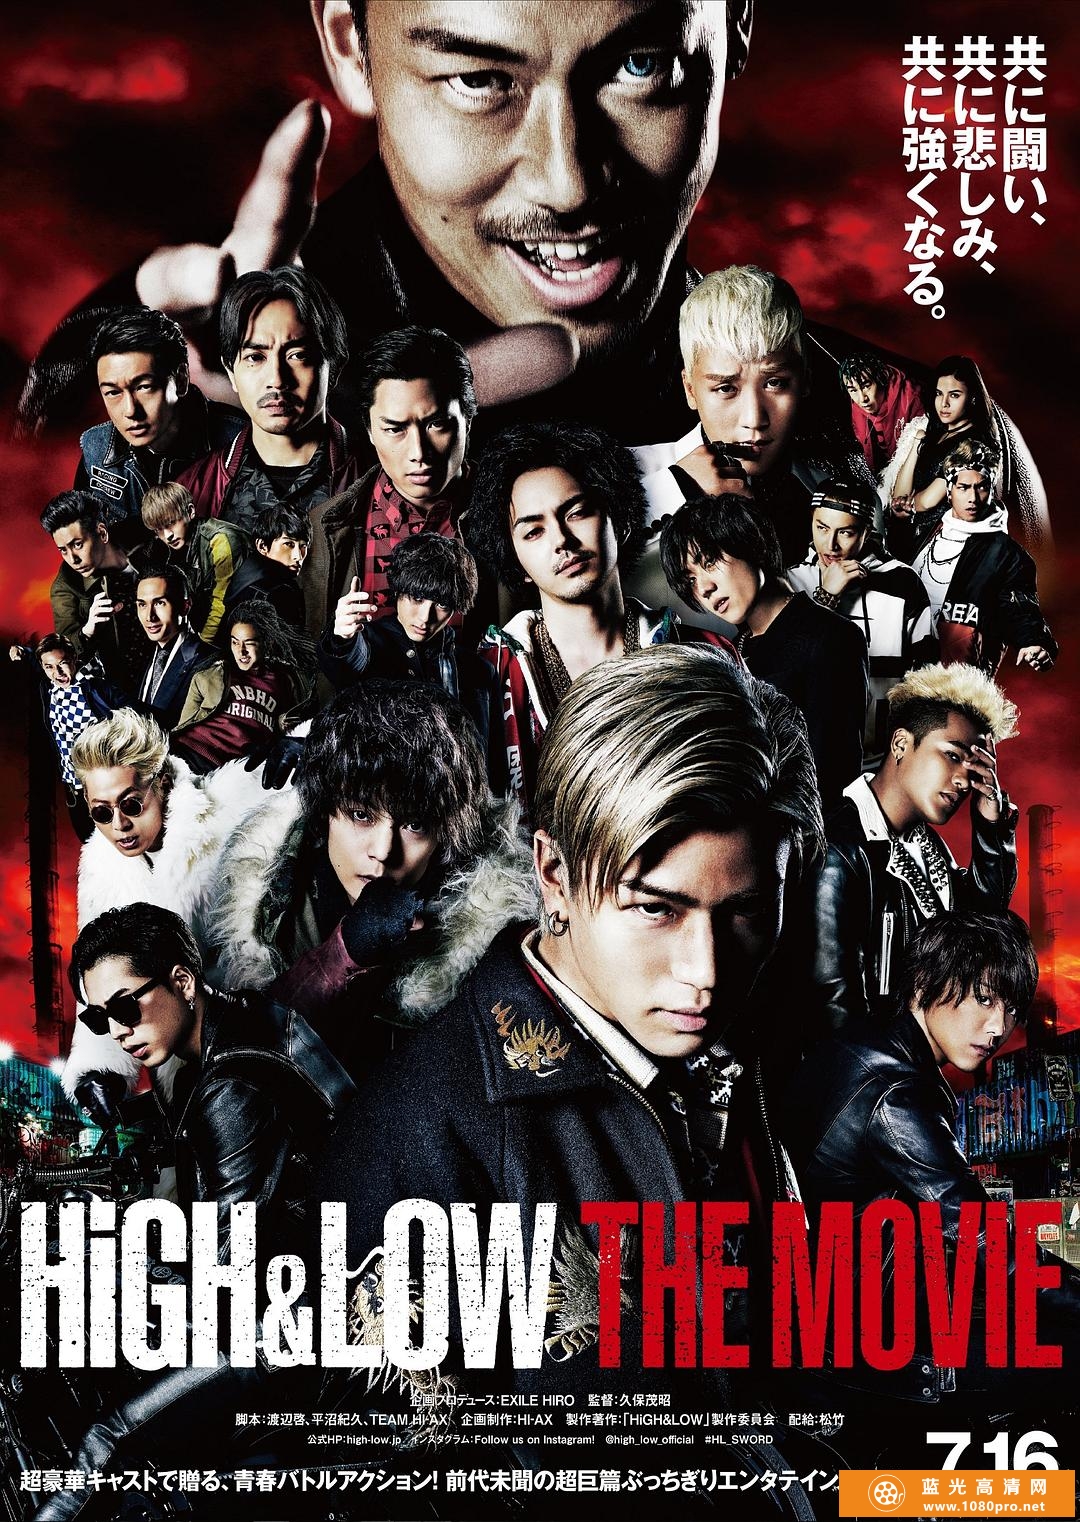 热血街区电影版 High.and.Low.The.Movie.2016.JAPANESE.1080p.BluRay.x264.DTS-iKiW 10.00GB